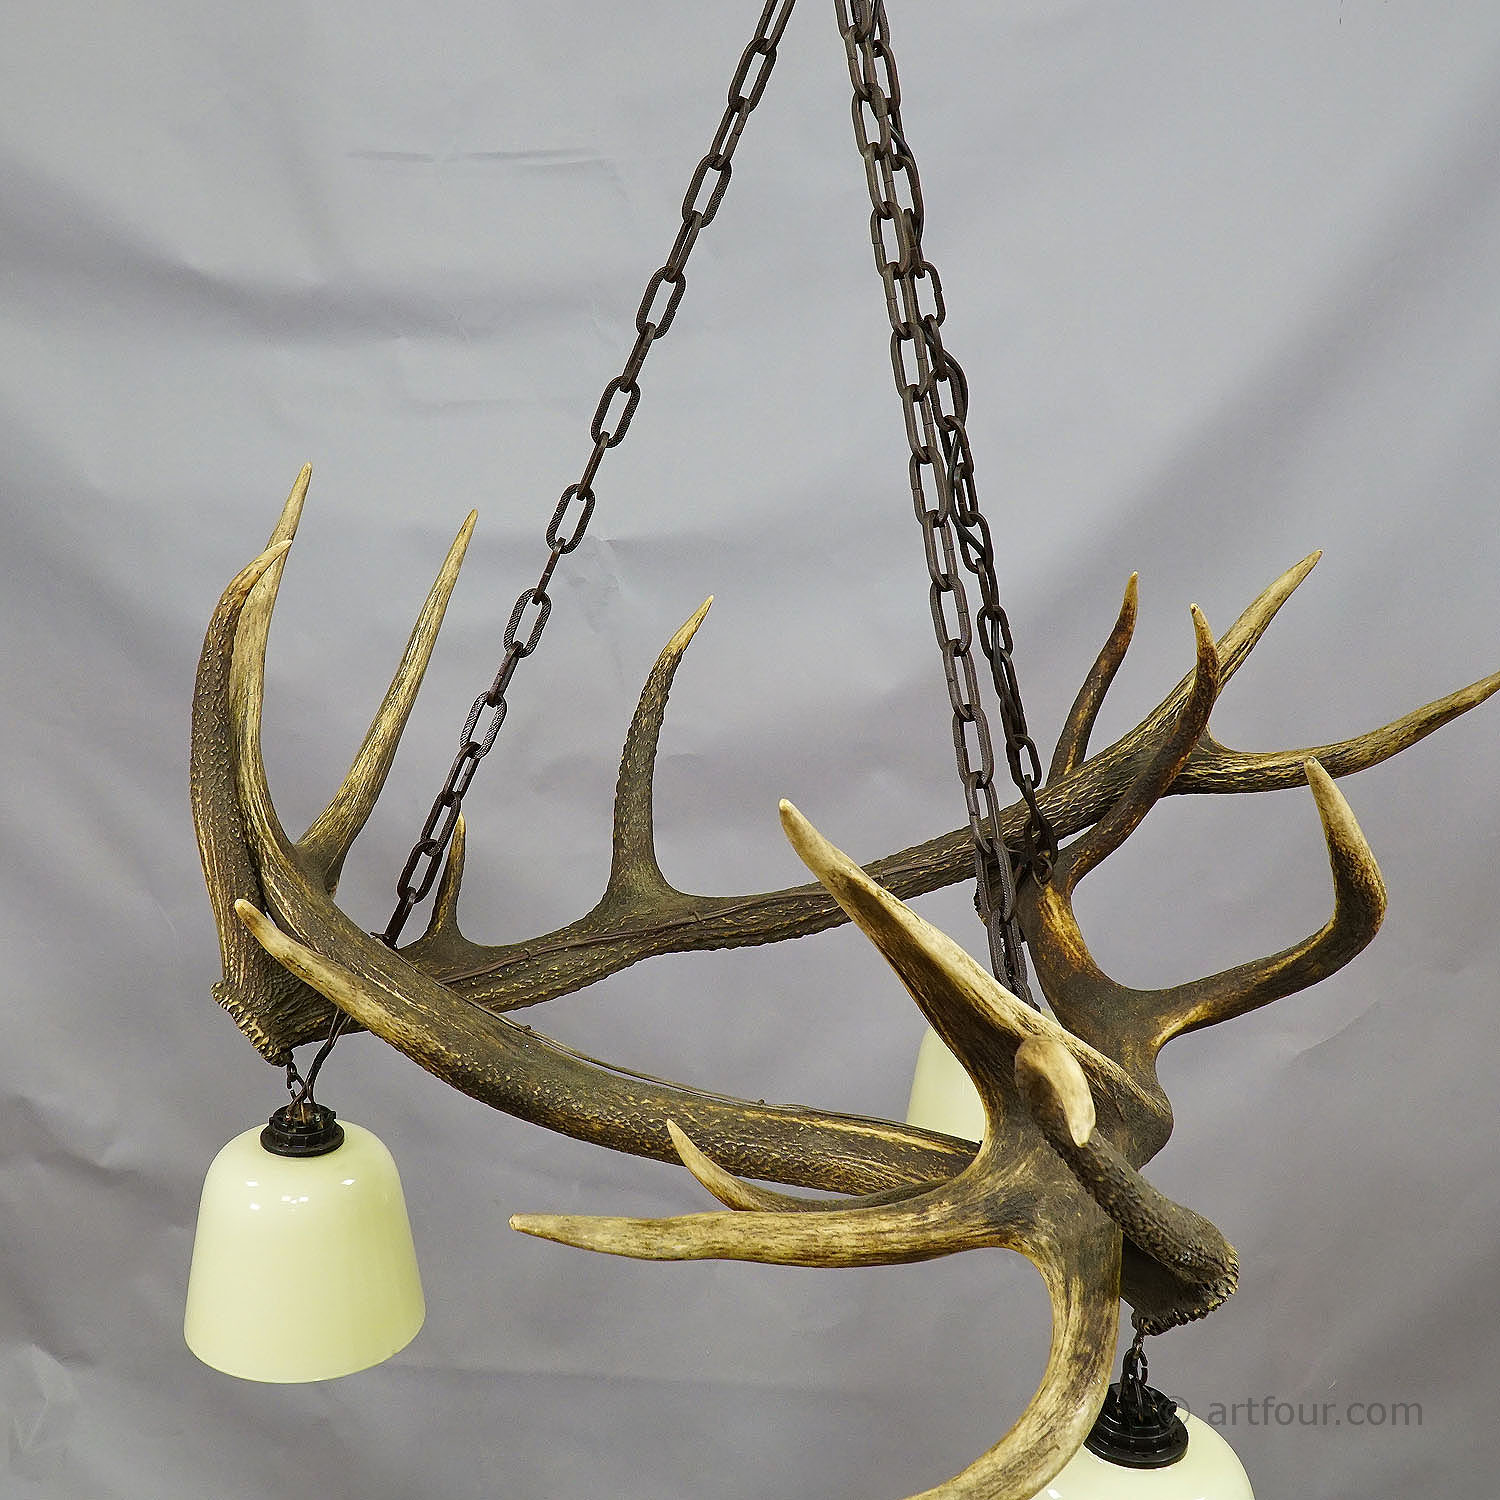 Rustic Antler Lamp with Deer Antlers